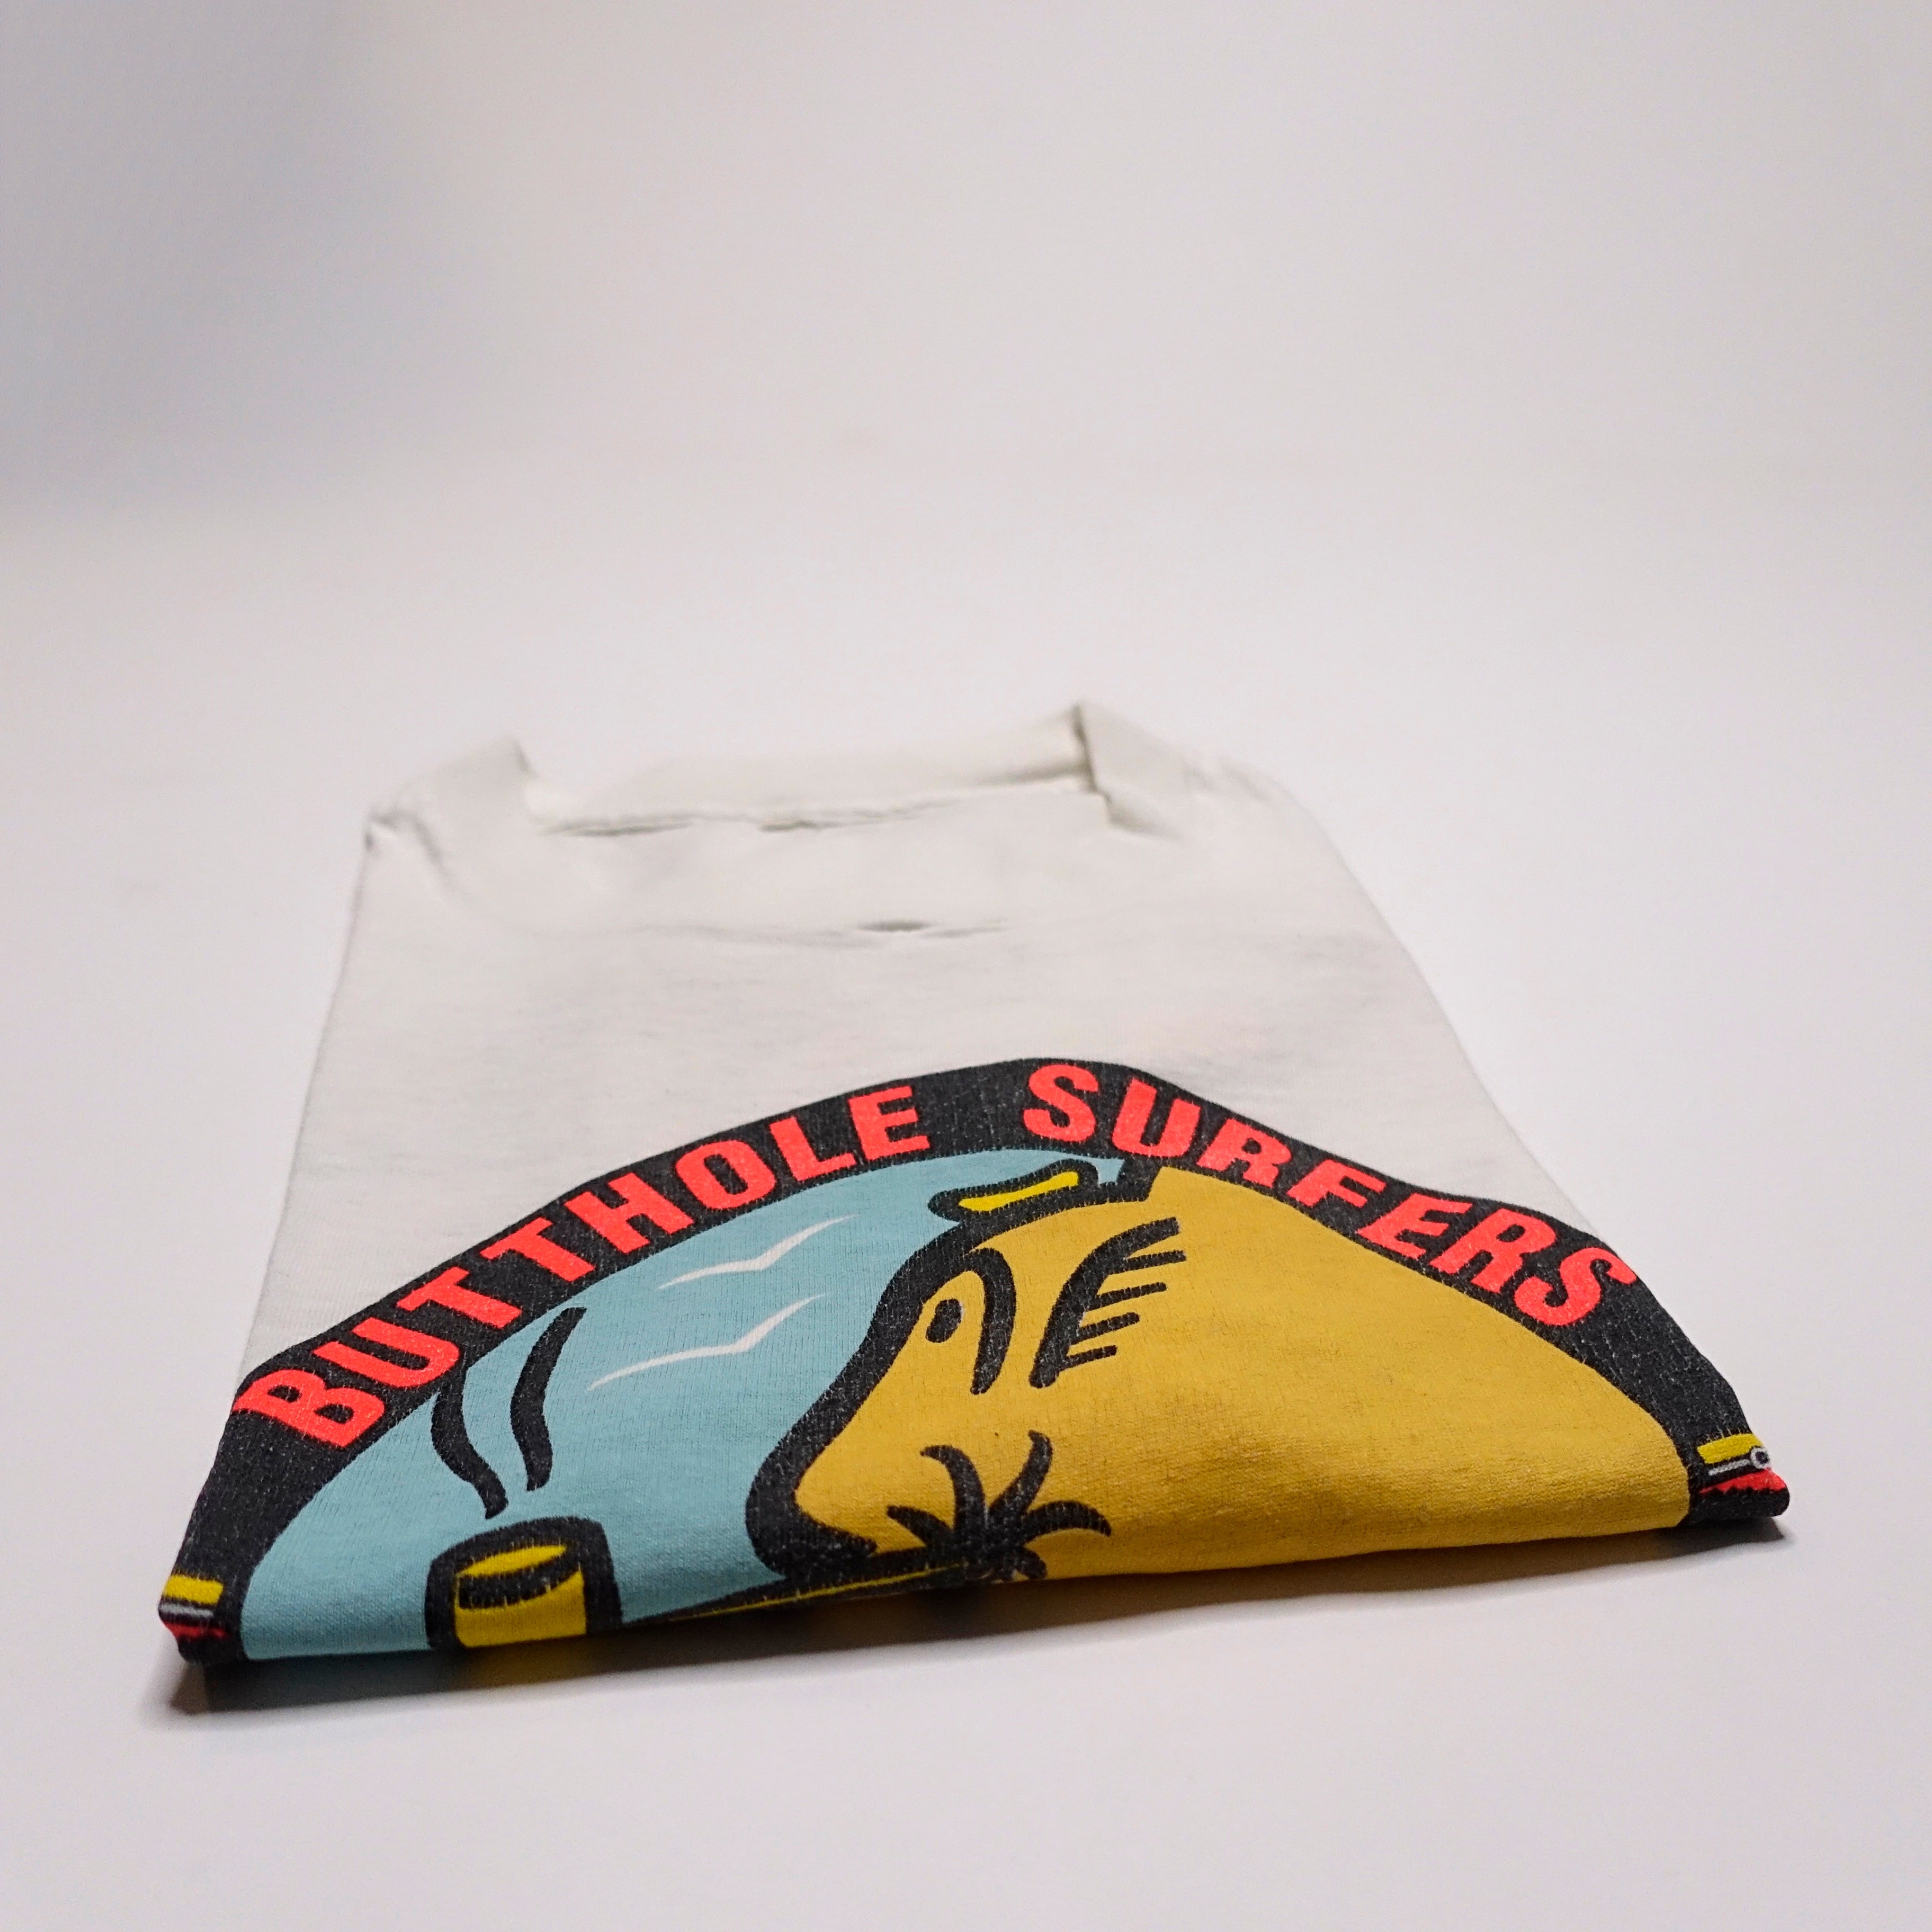 Butthole Surfers - Pee Pee The Sailor Tour Shirt Size XL